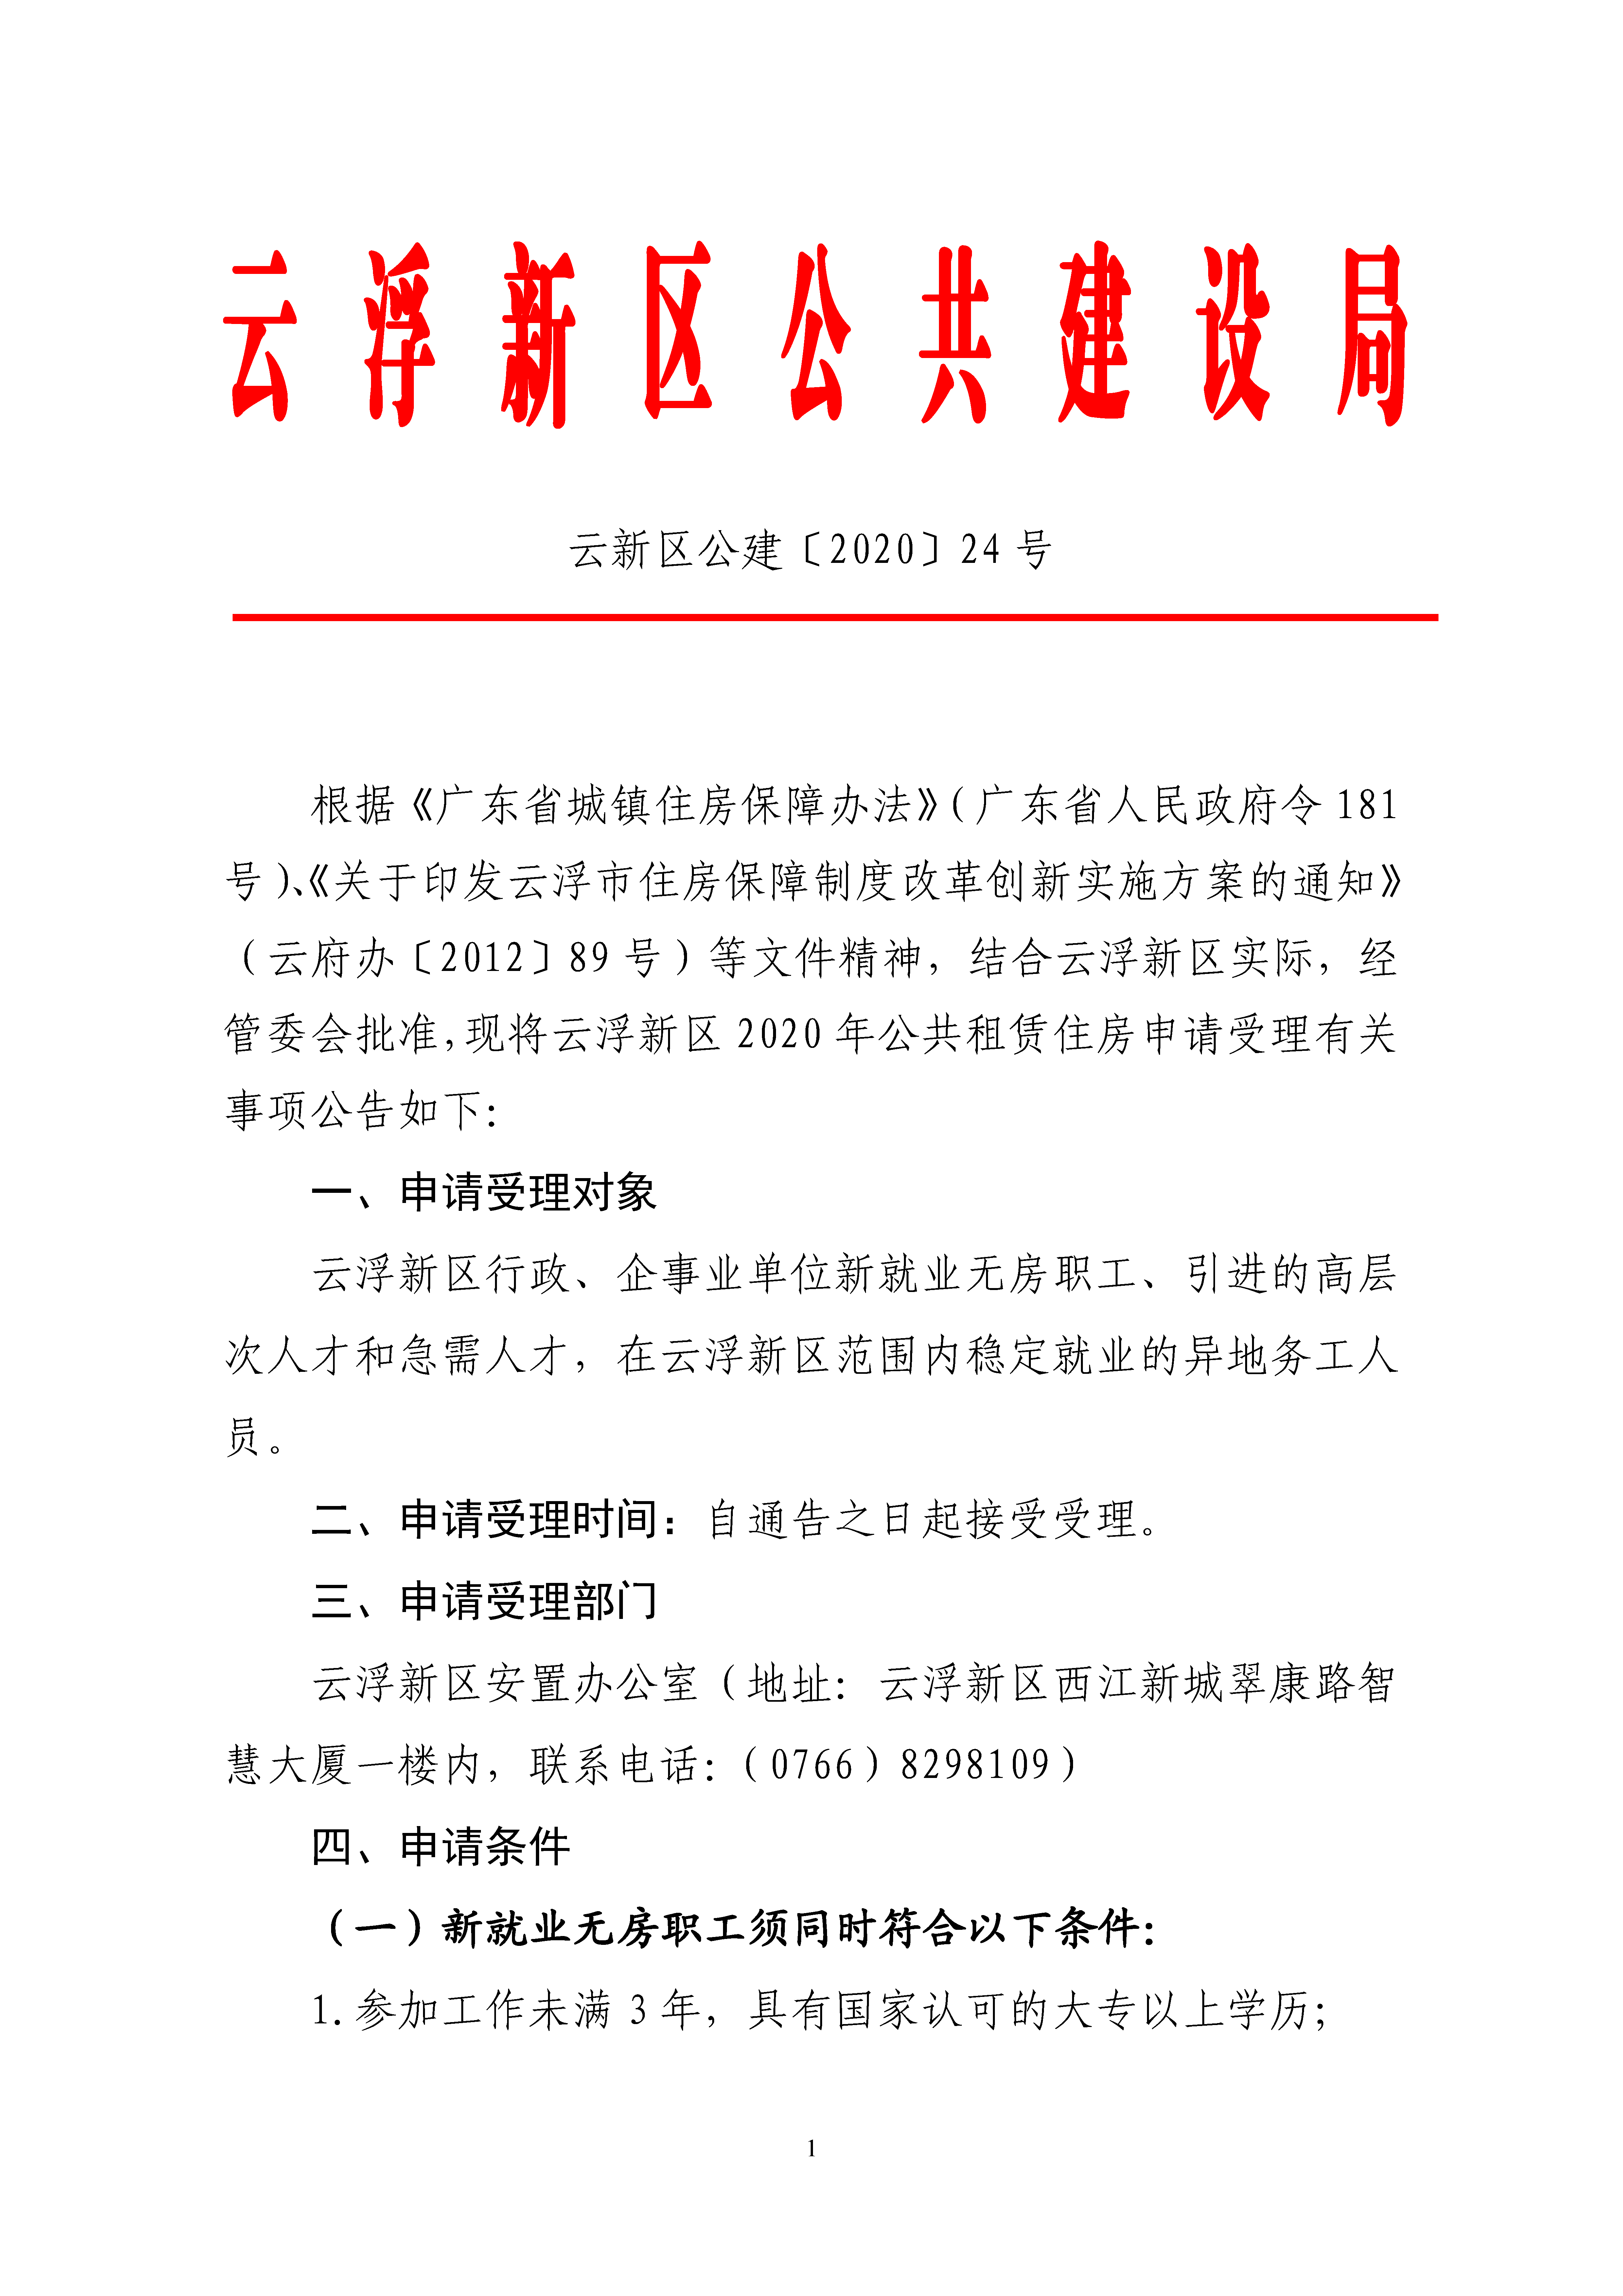 云浮新区2020年公共租赁住房申请受理的通告_页面_1.png